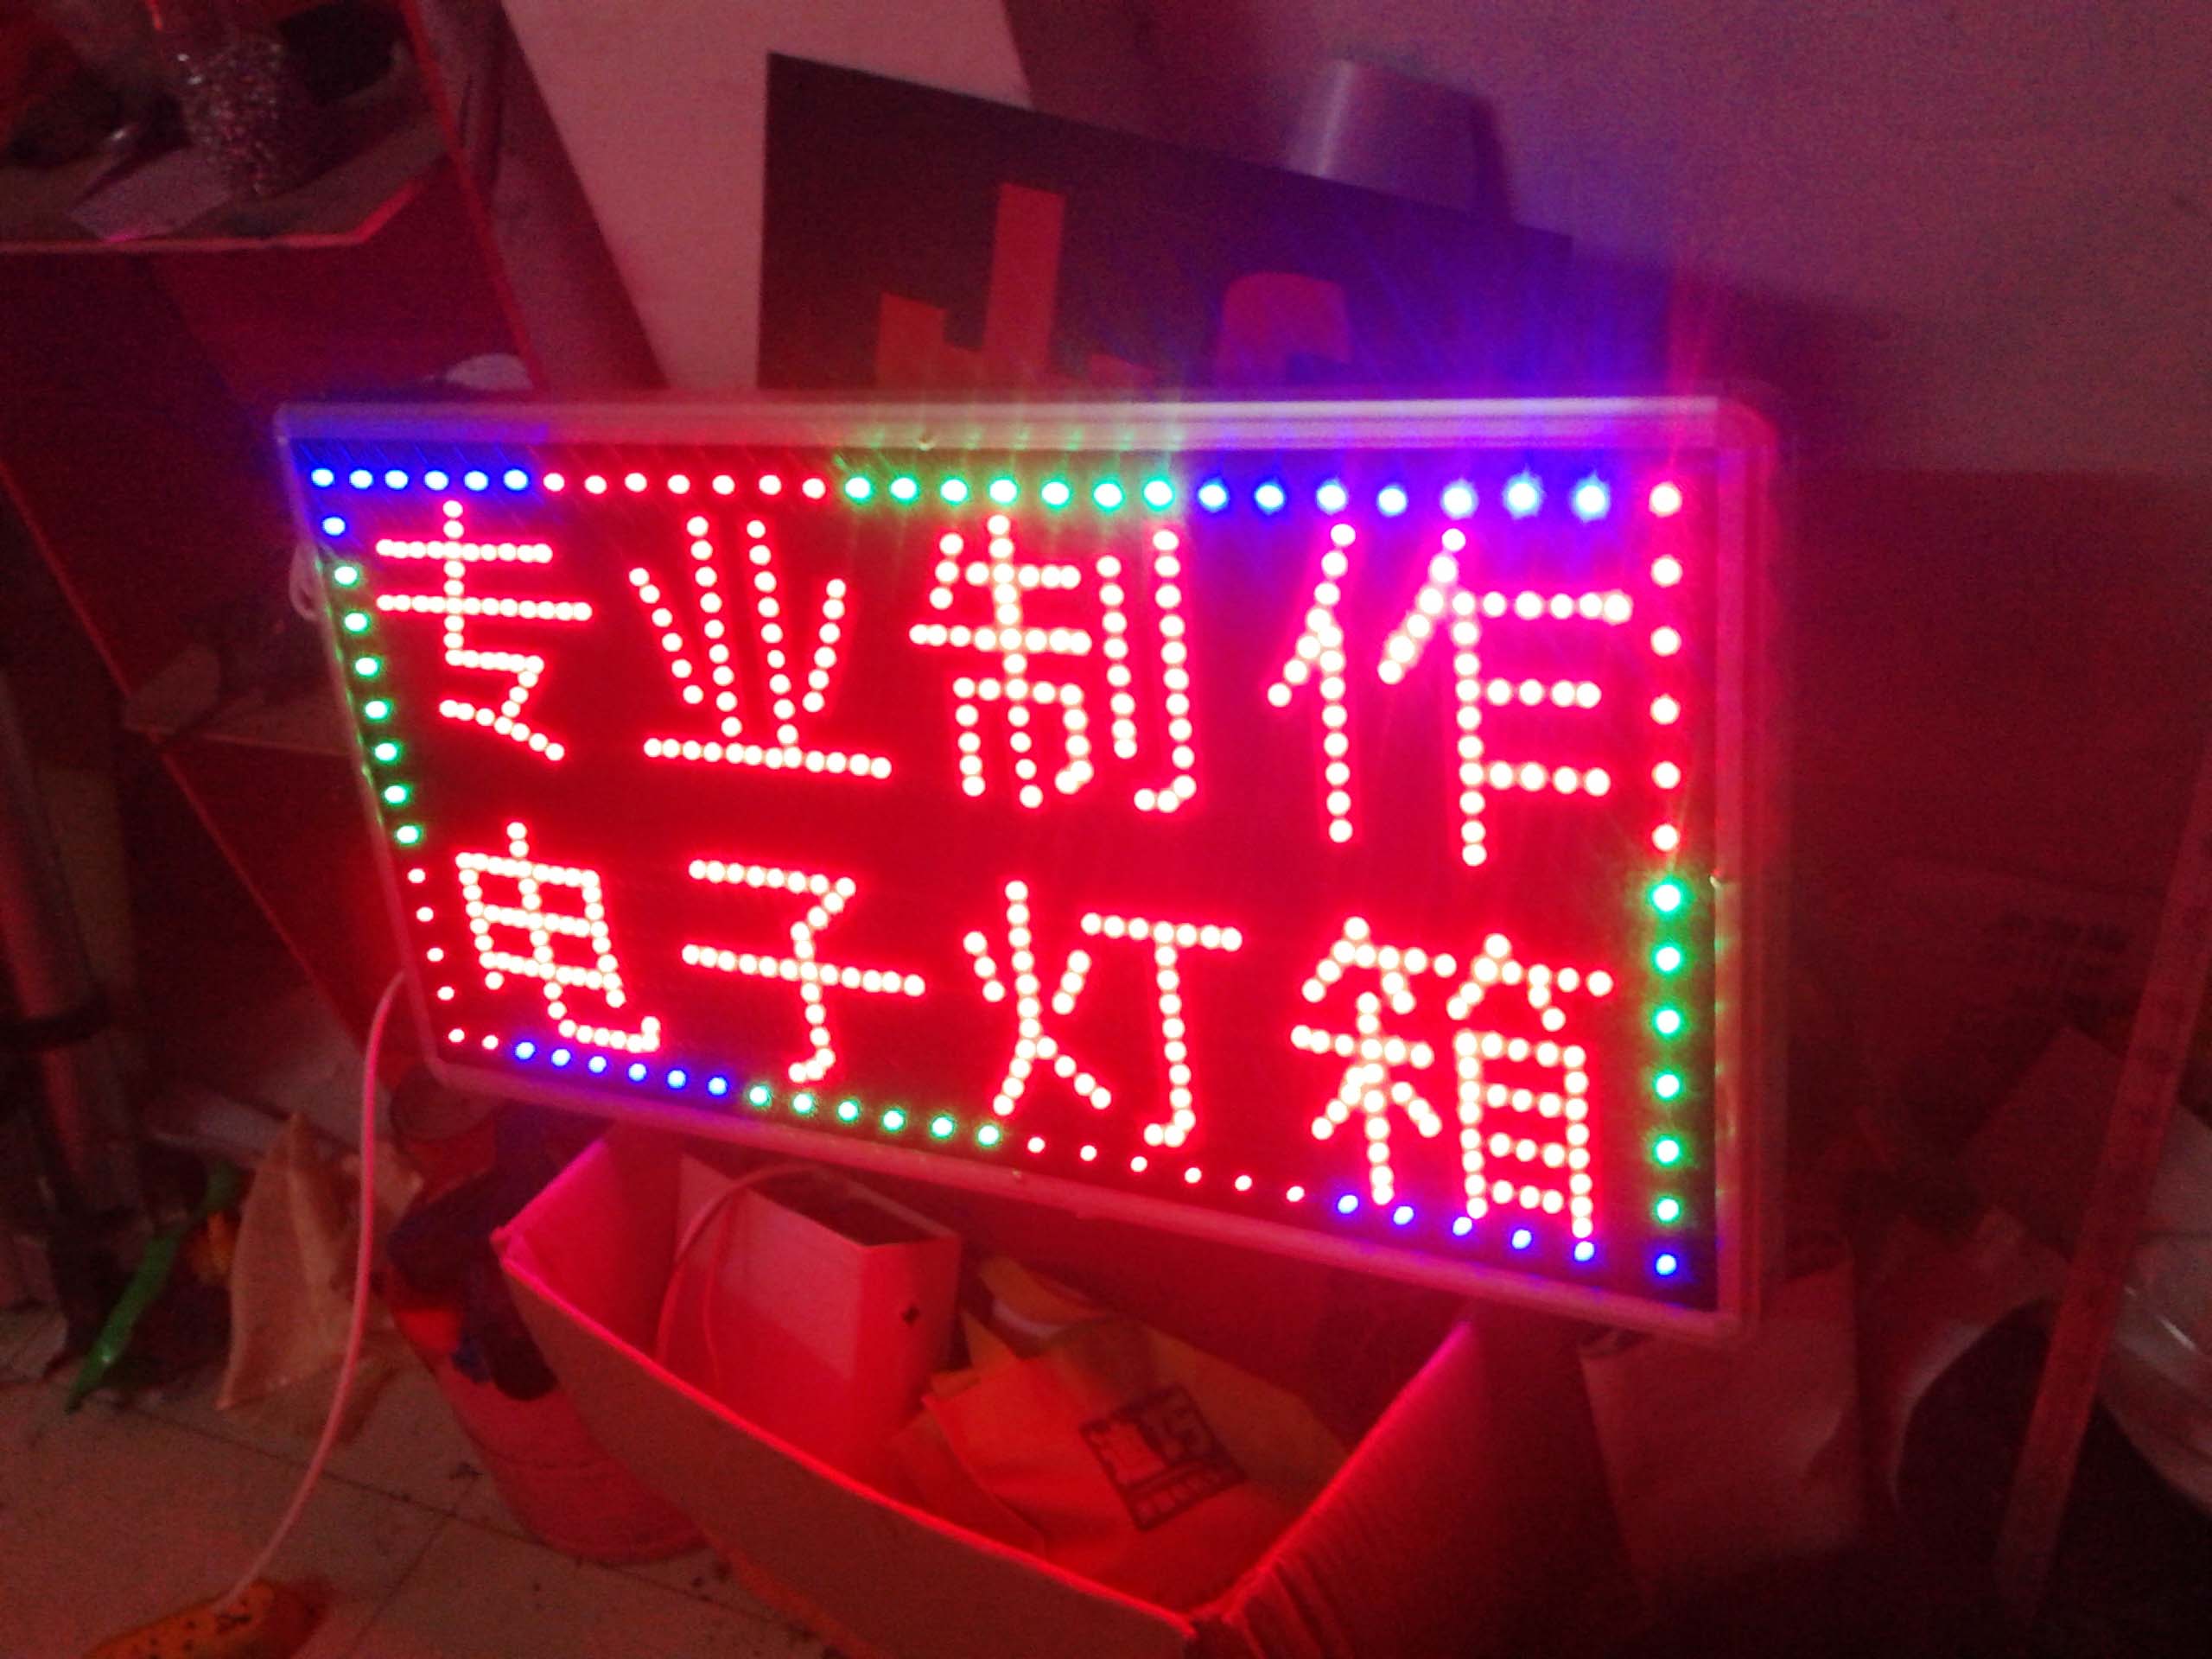 LED电子灯箱